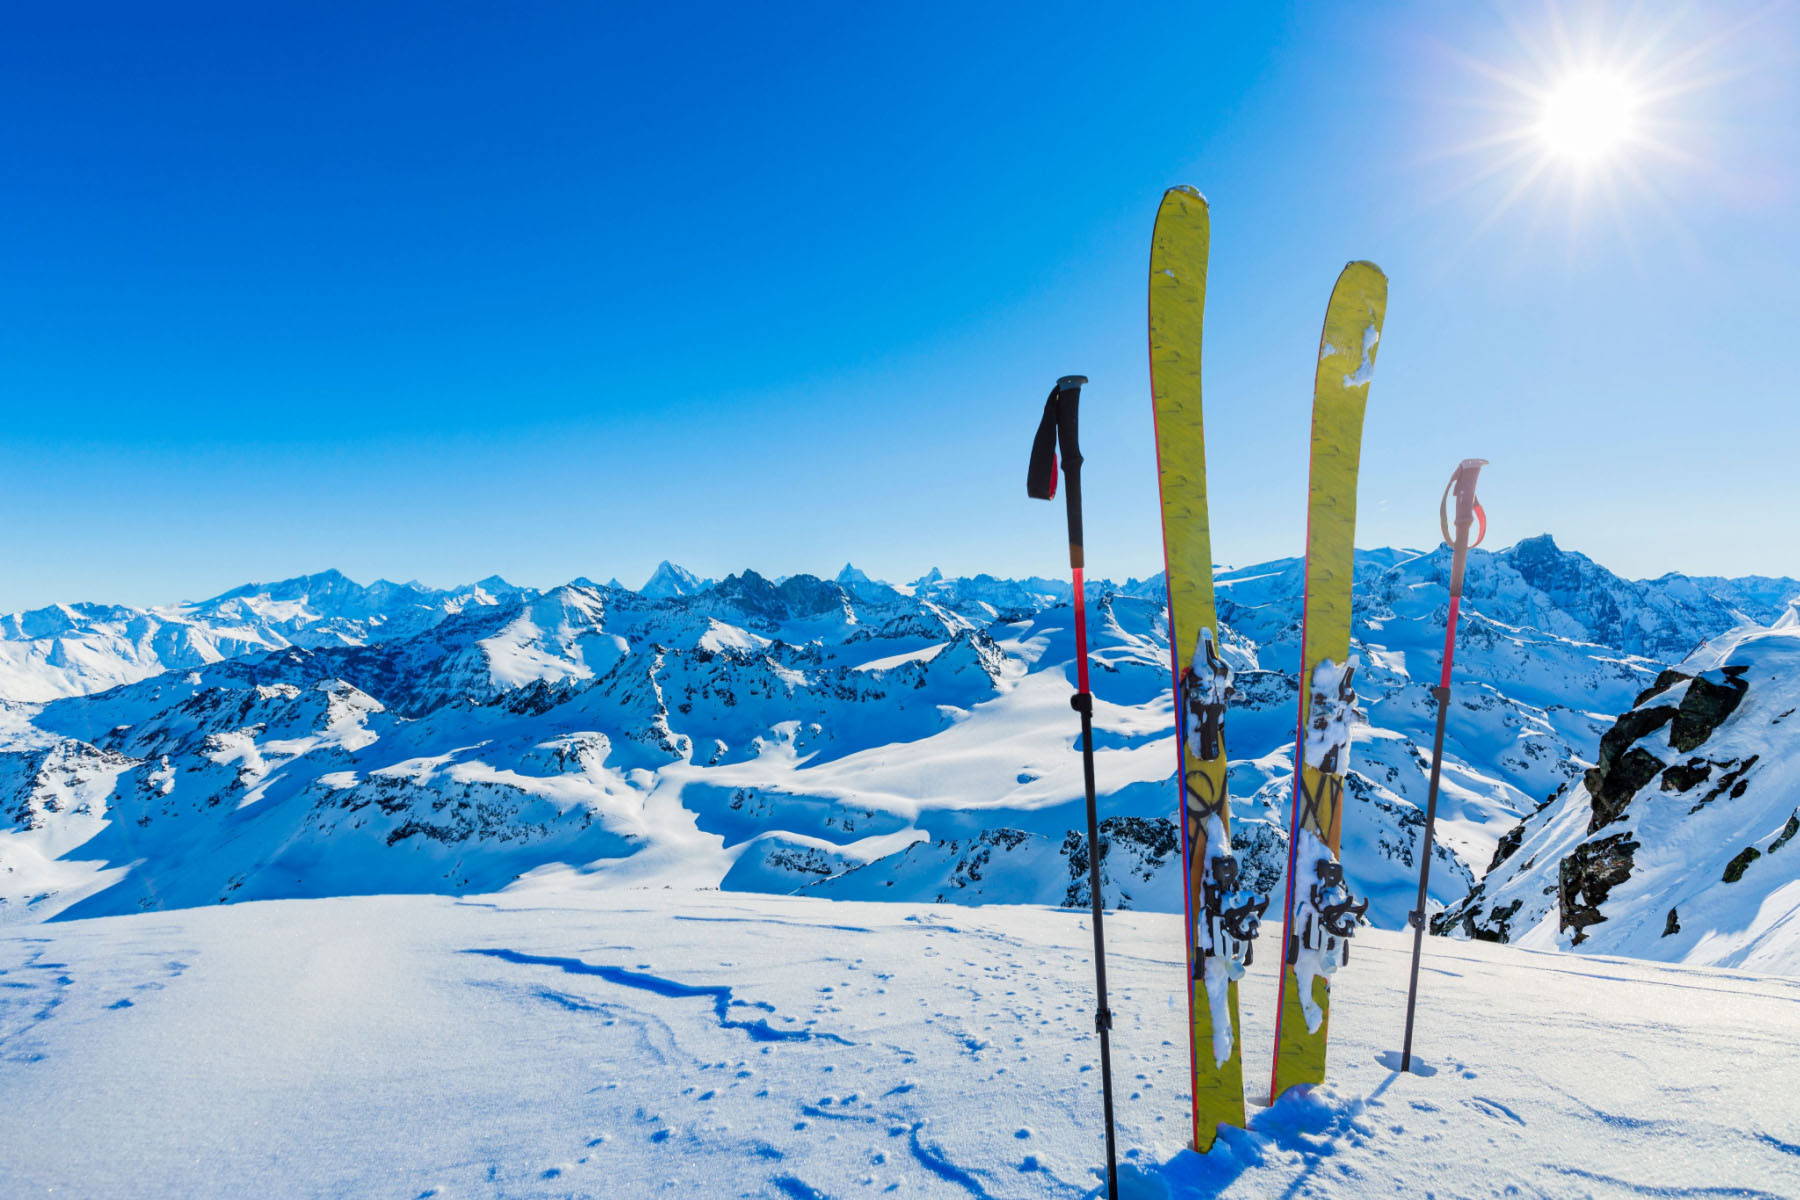 Turnosmučarska oprema zapičena v snegu na ozadju gorskih vrhov